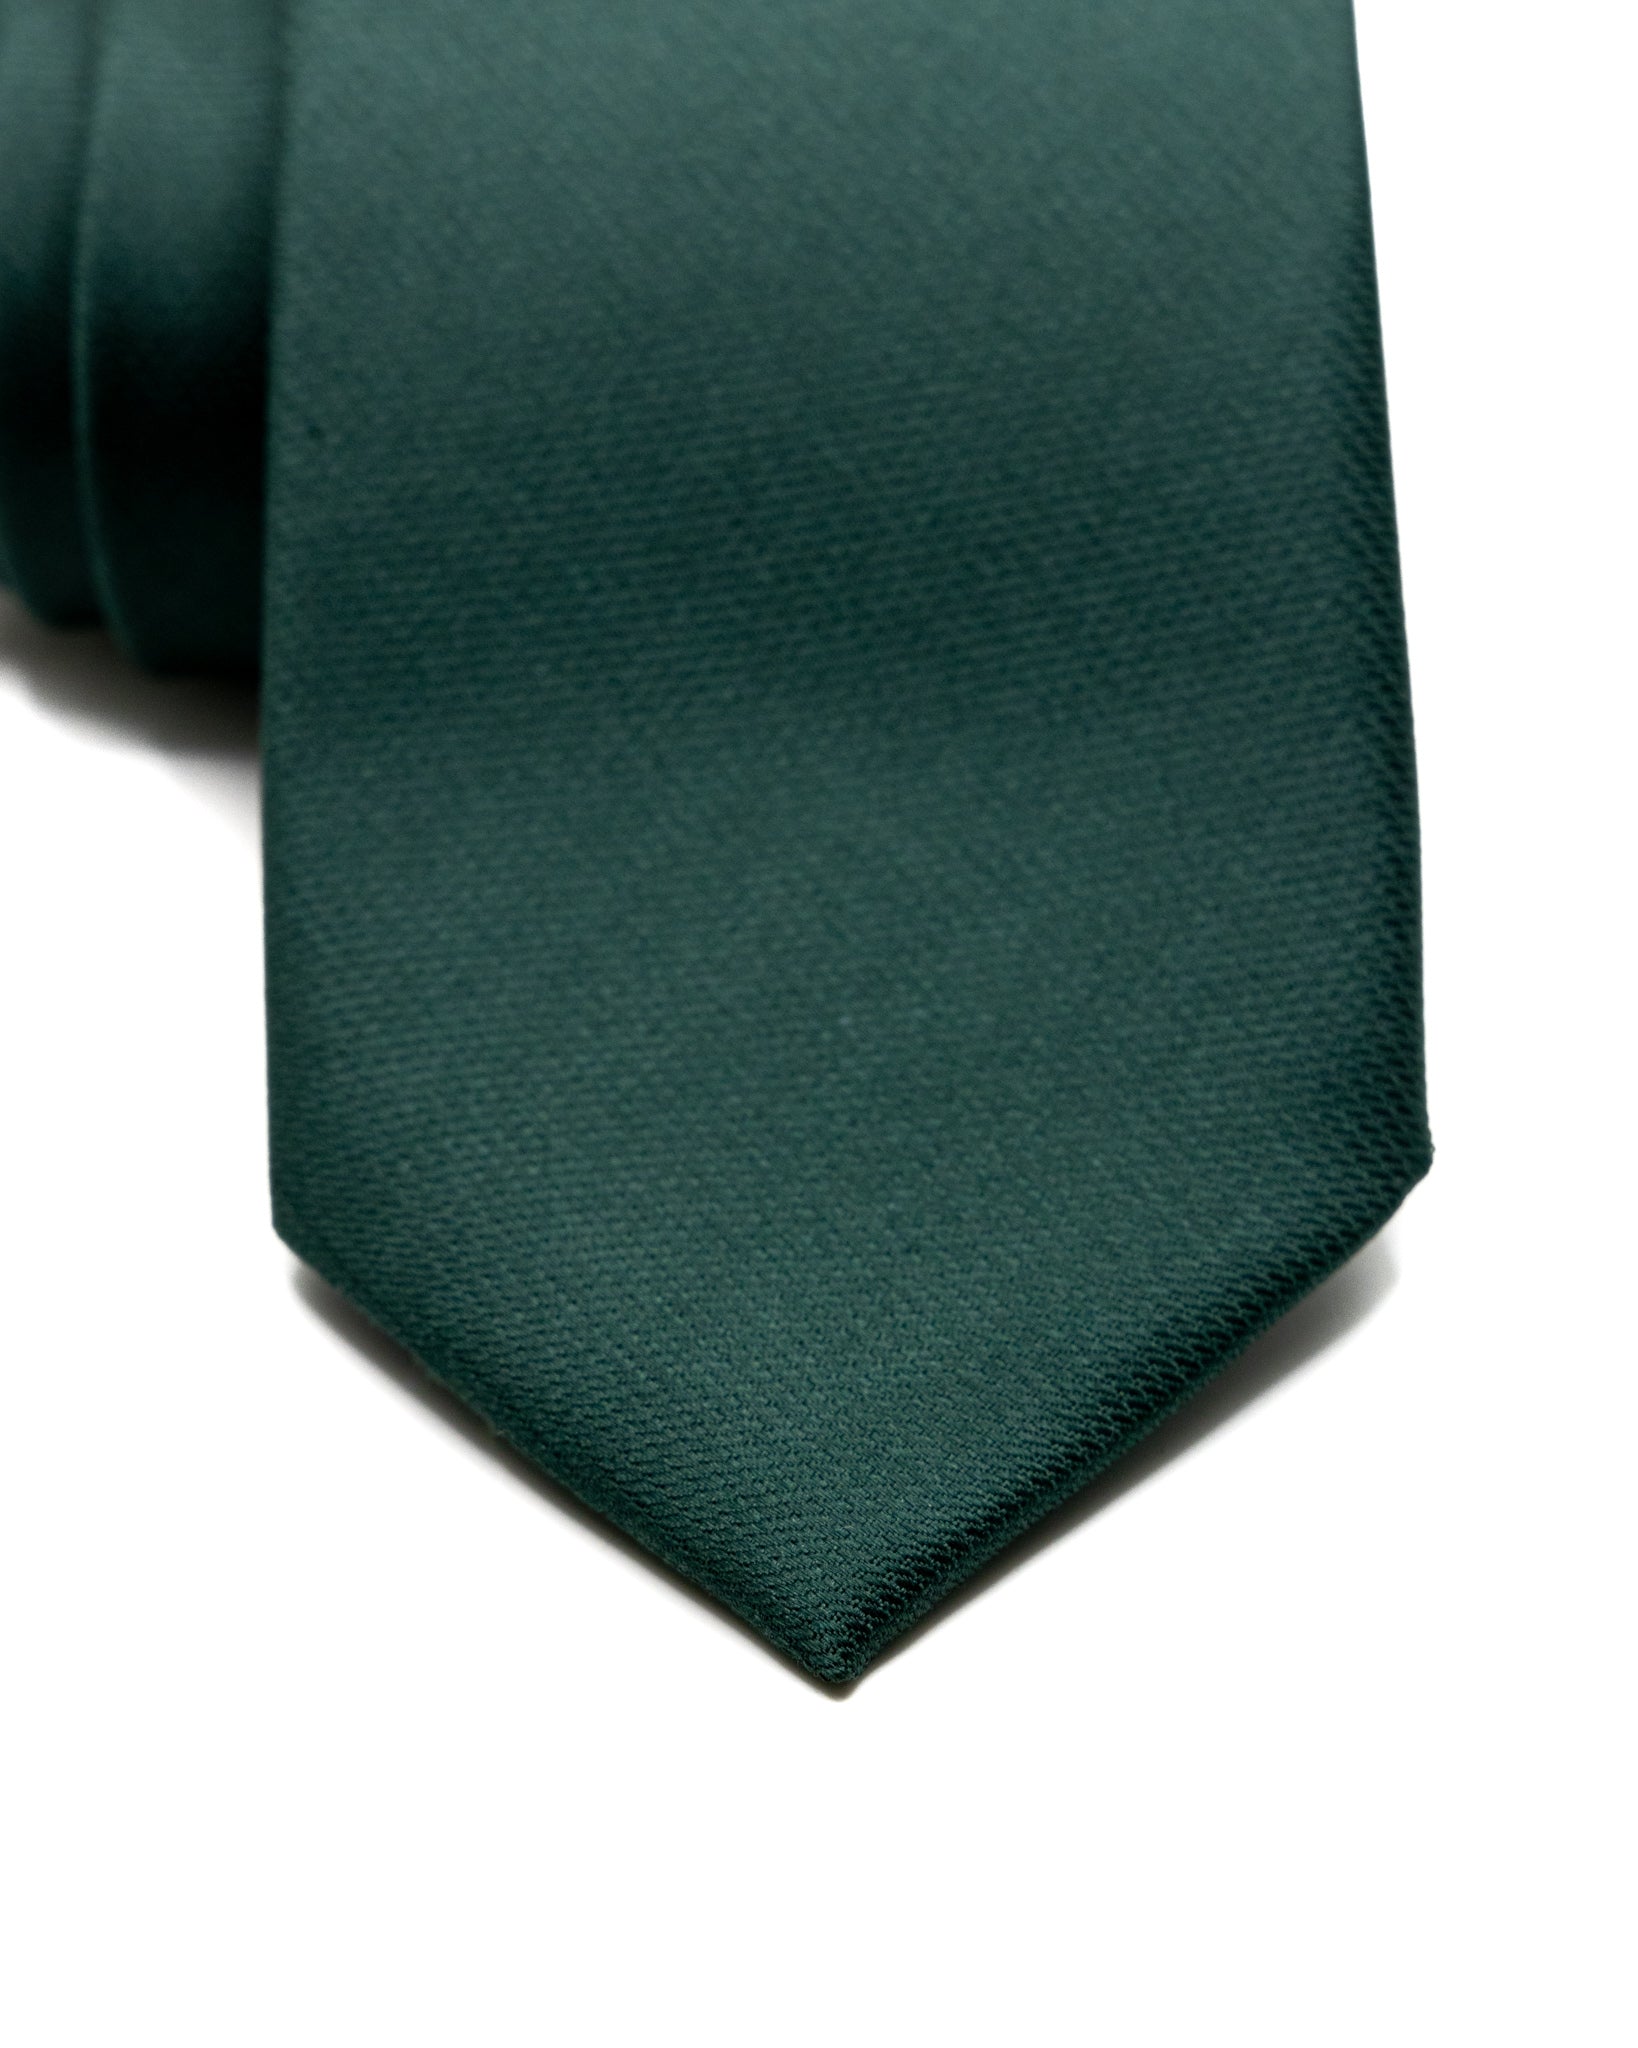 Cravatta - in seta armaturata verde